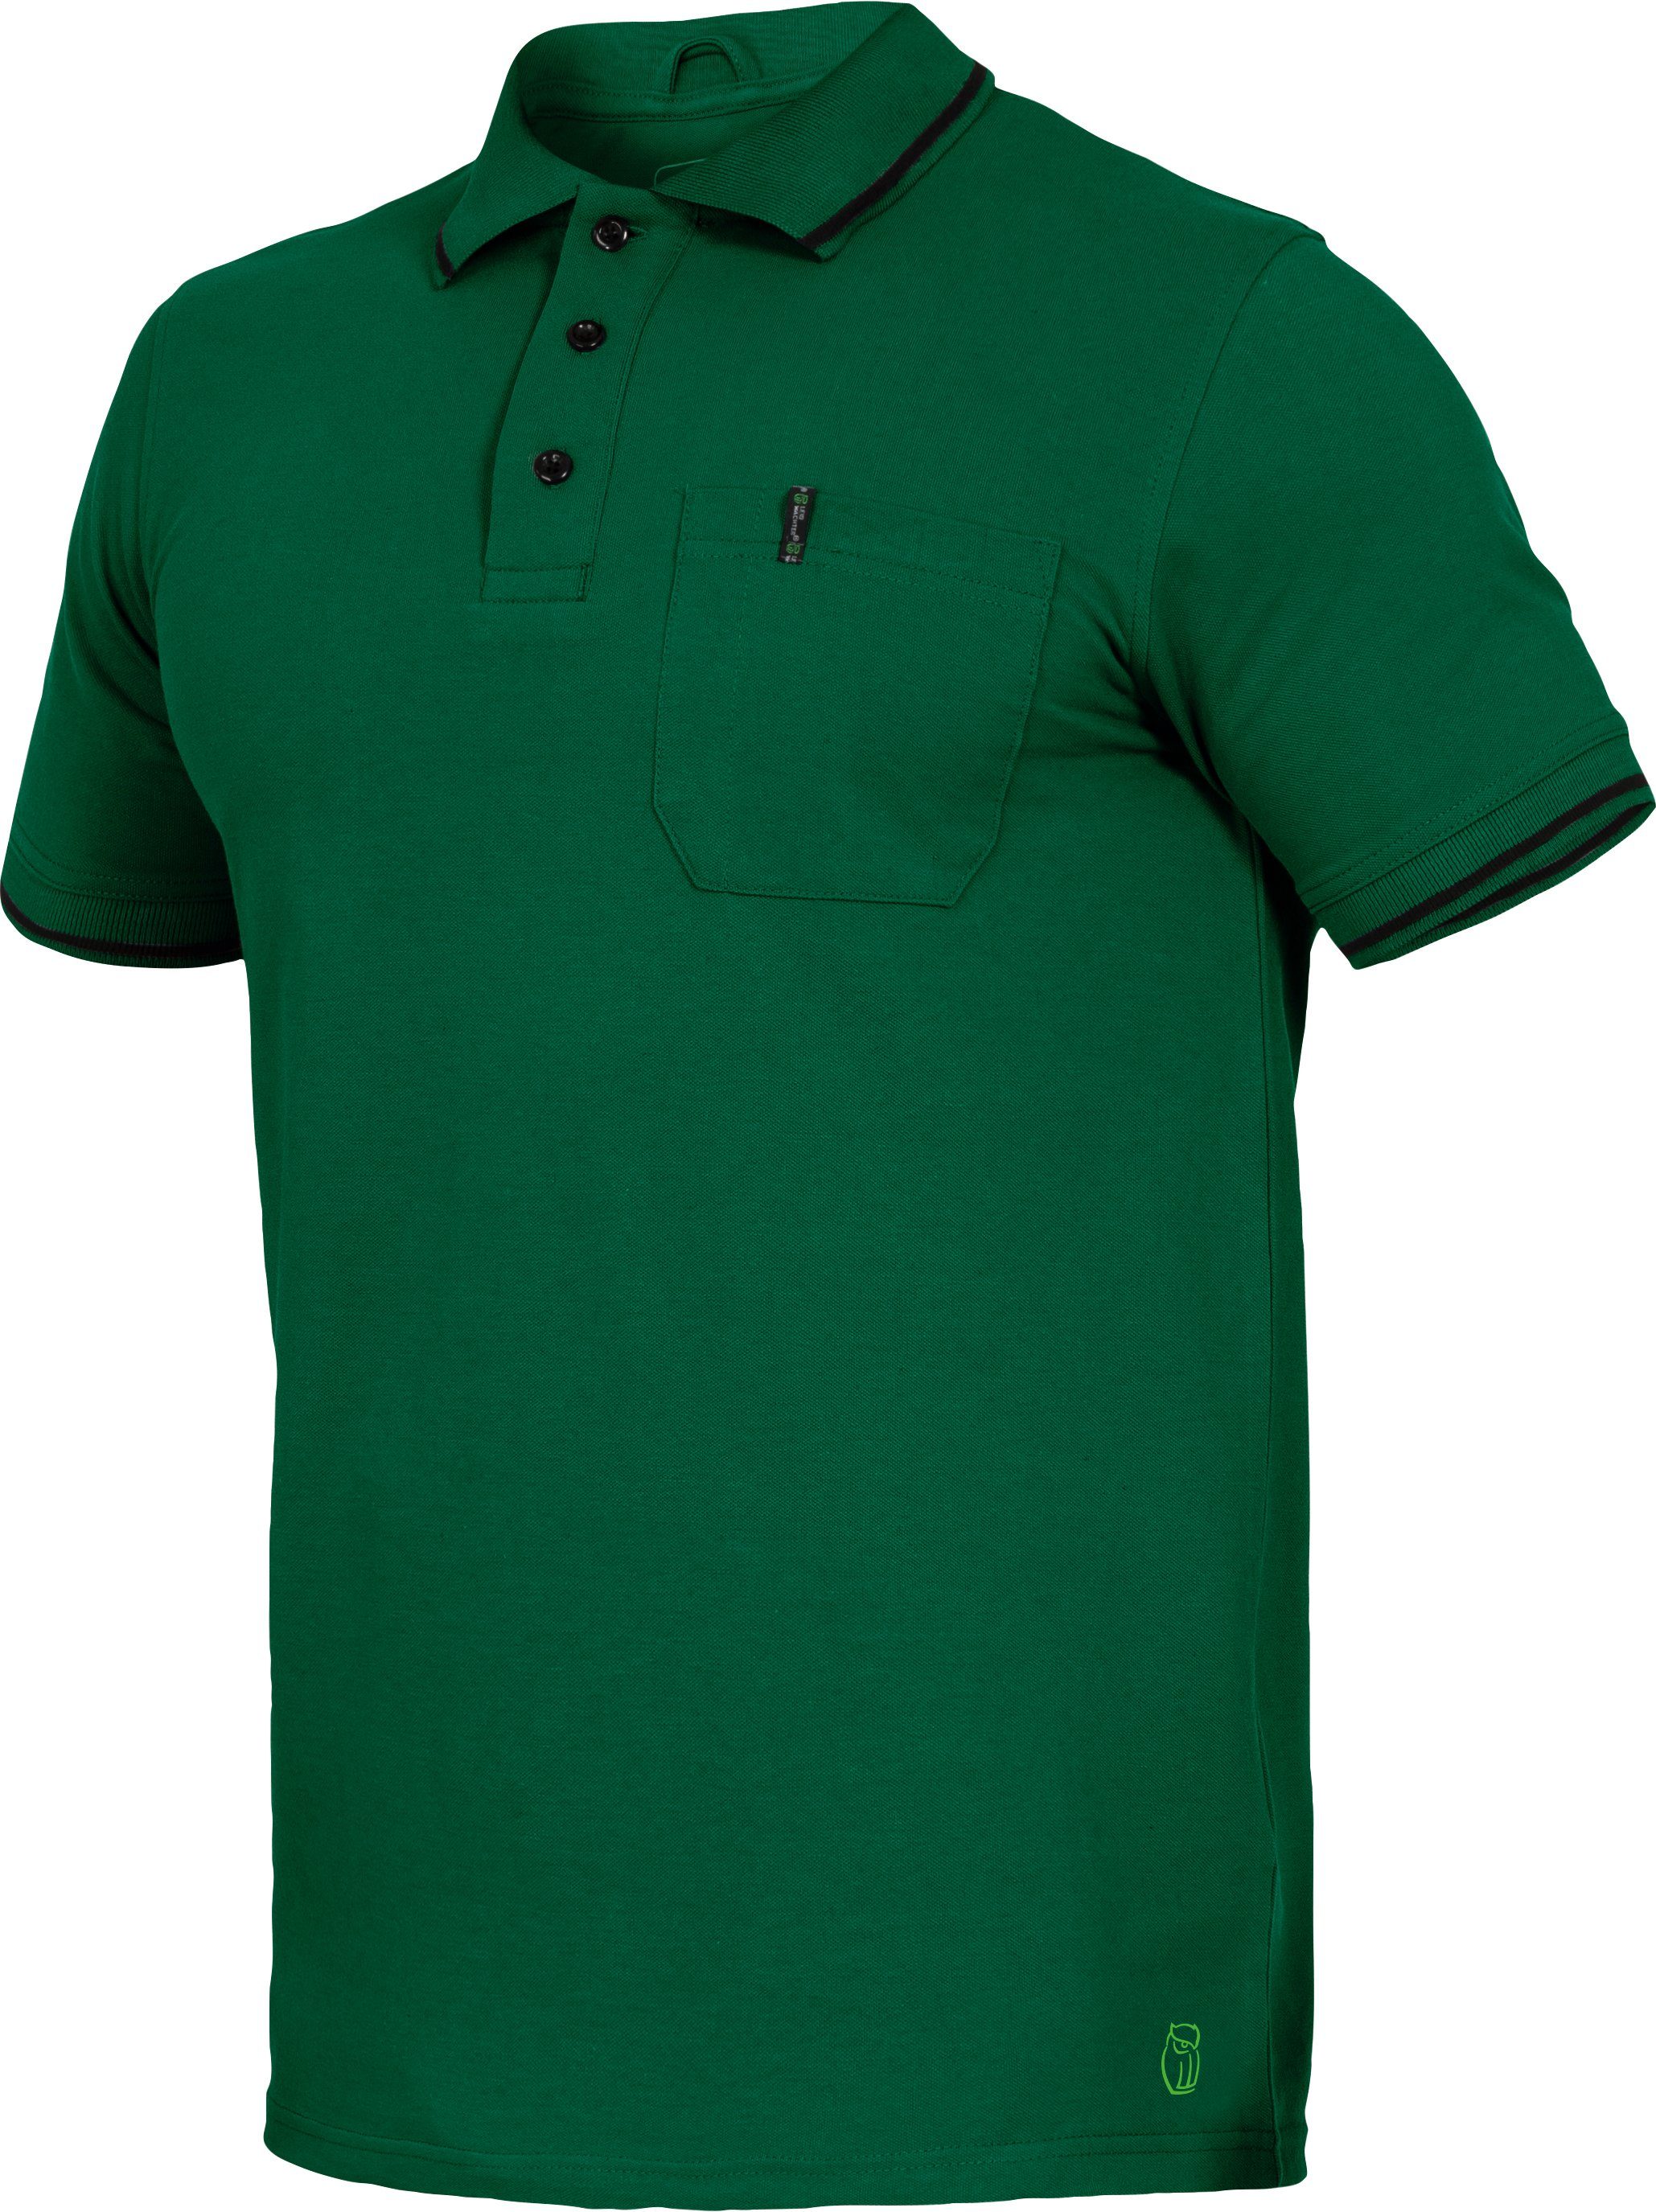 Flex-Line Poloshirt grün Herren Leibwächter Poloshirt